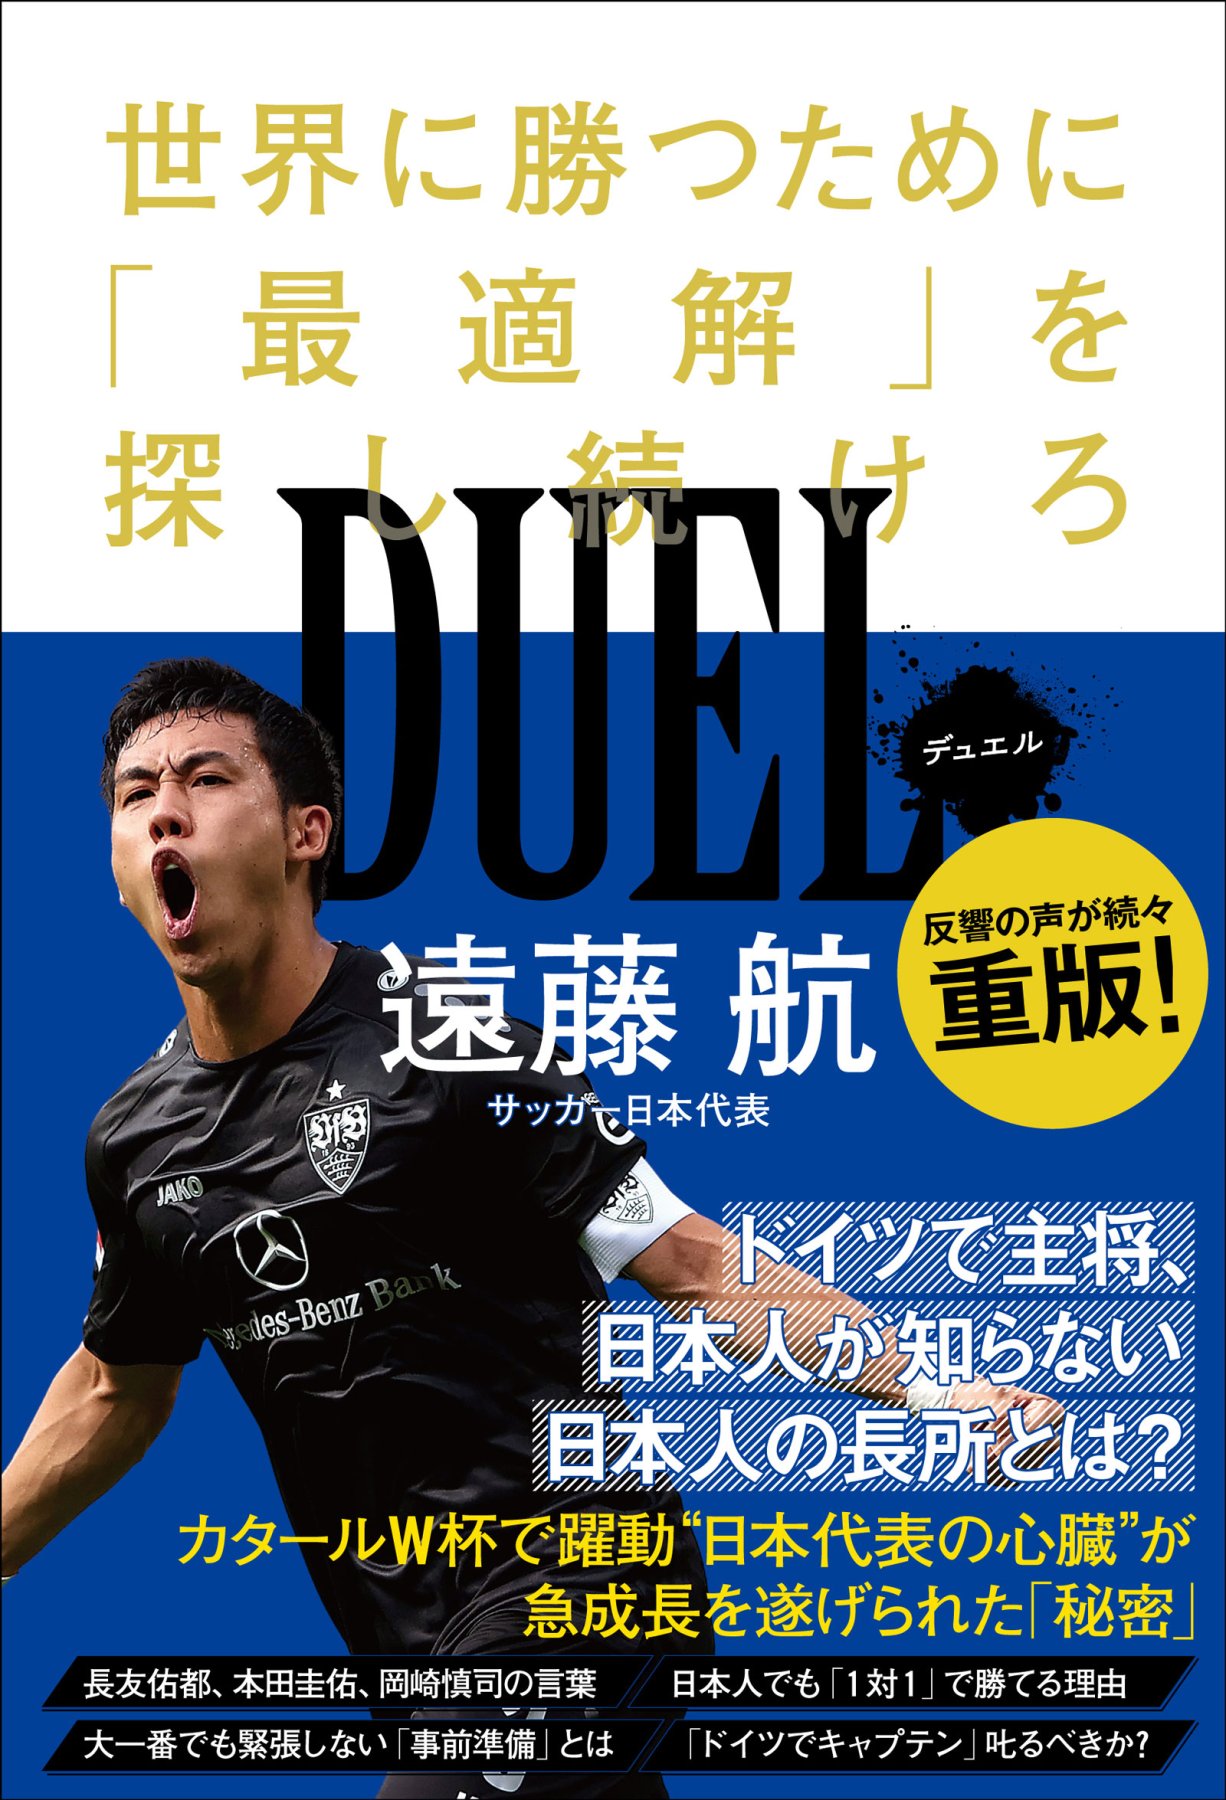 プロサッカー選手・遠藤航の書籍『DUEL 世界で勝つために「最適解」を探し続けろ 』